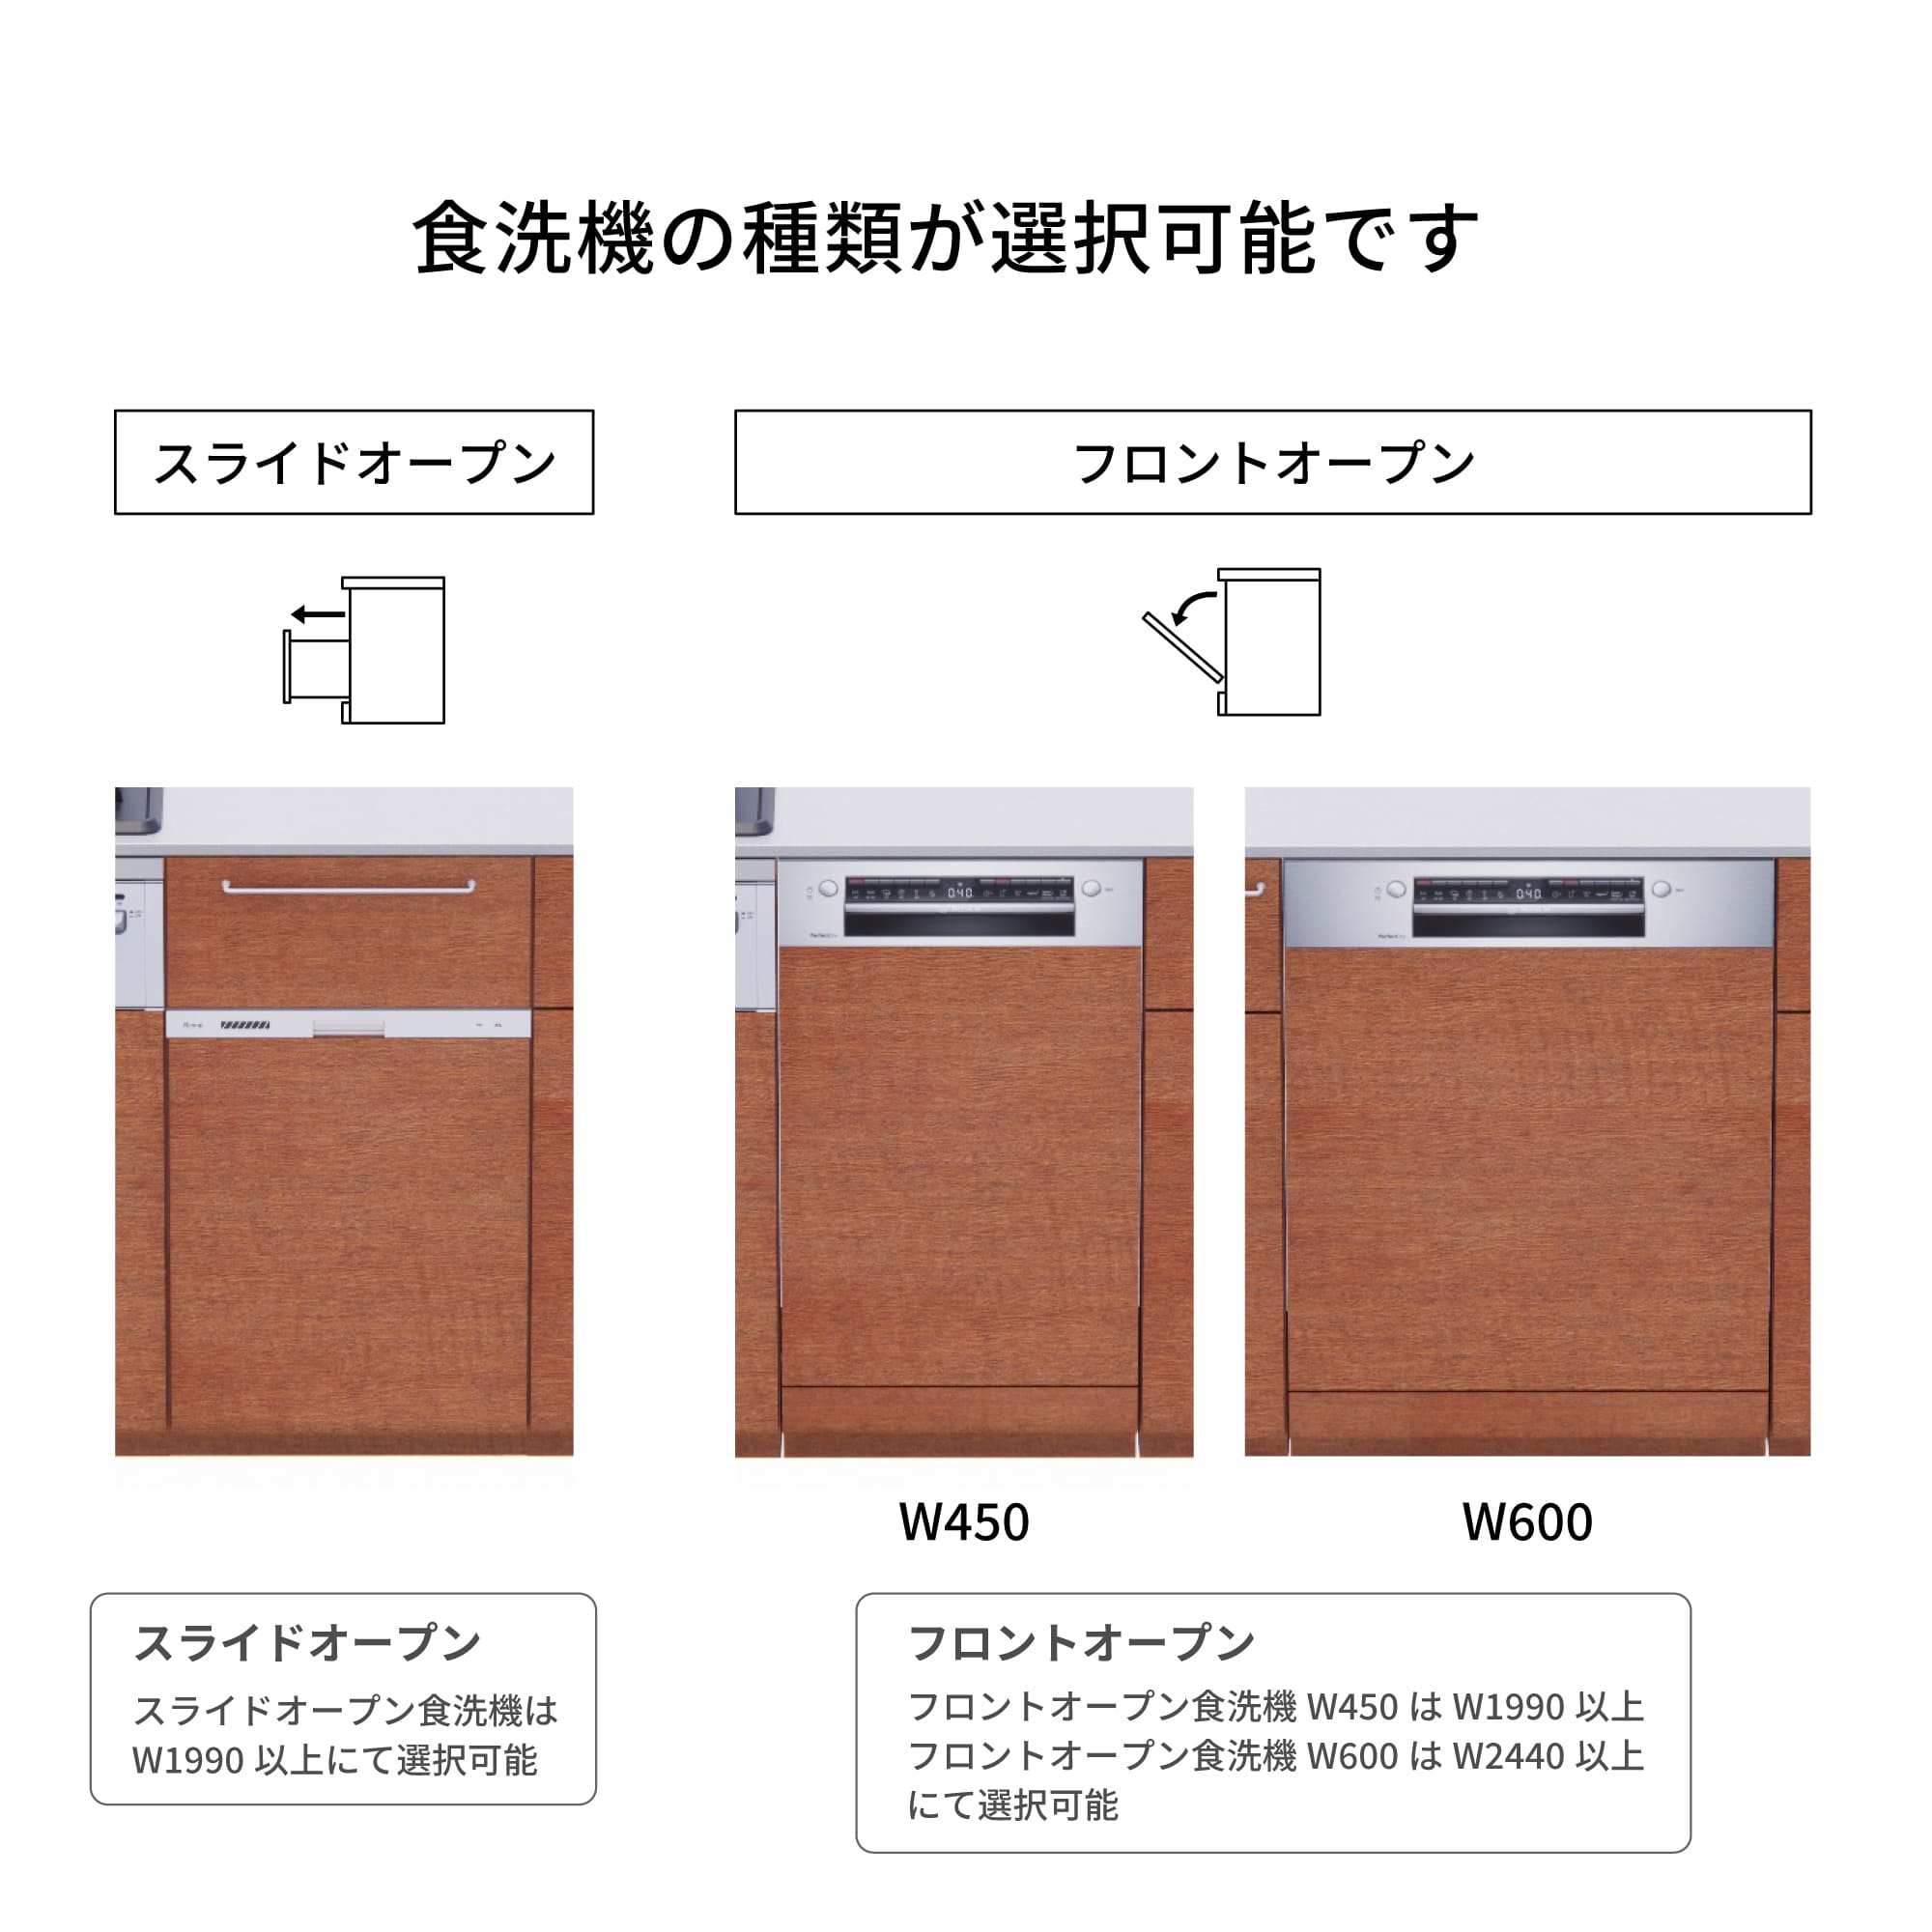 木製システムキッチン 壁付け型 W1990・コンロあり / オーブンなし / 食洗機あり KB-KC022-15-G183 食洗機が選択できます